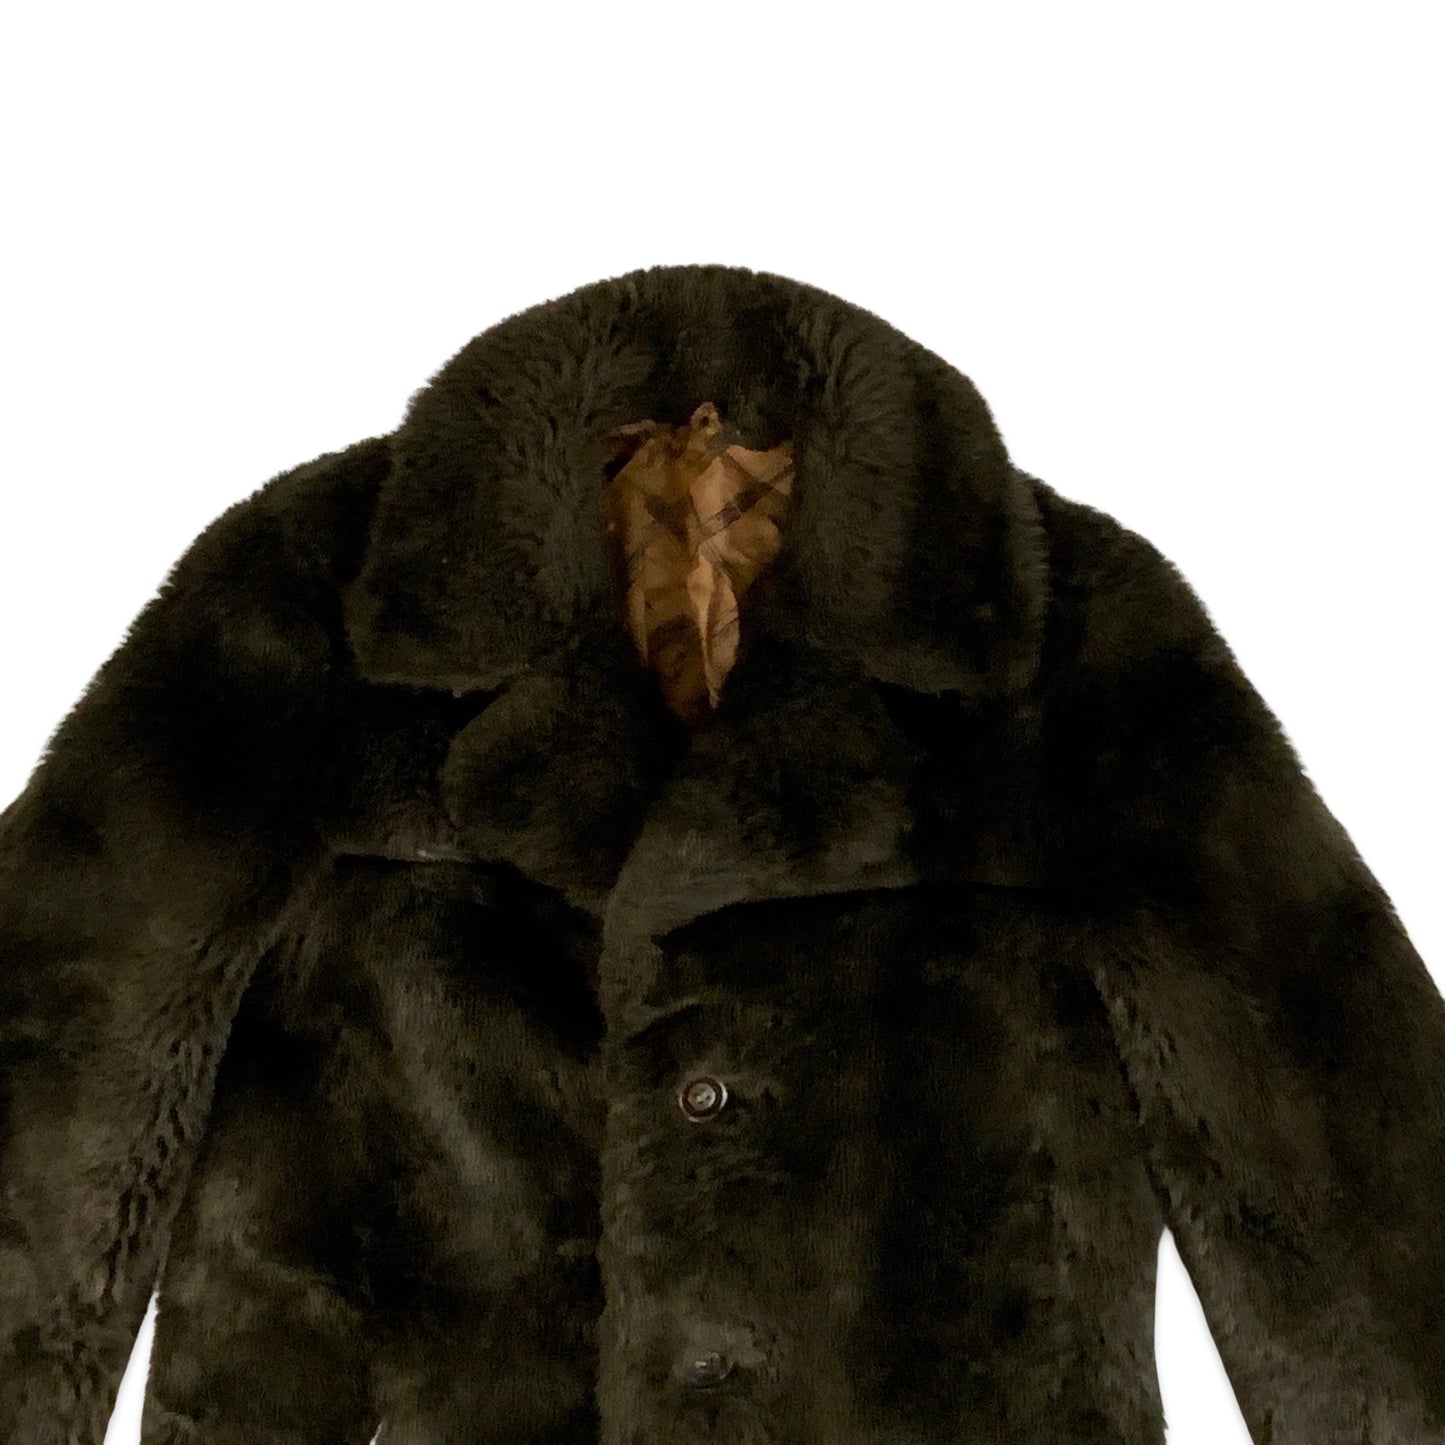 Vintage 80s Faux Fur Teddy Bear Coat Brown 12 14